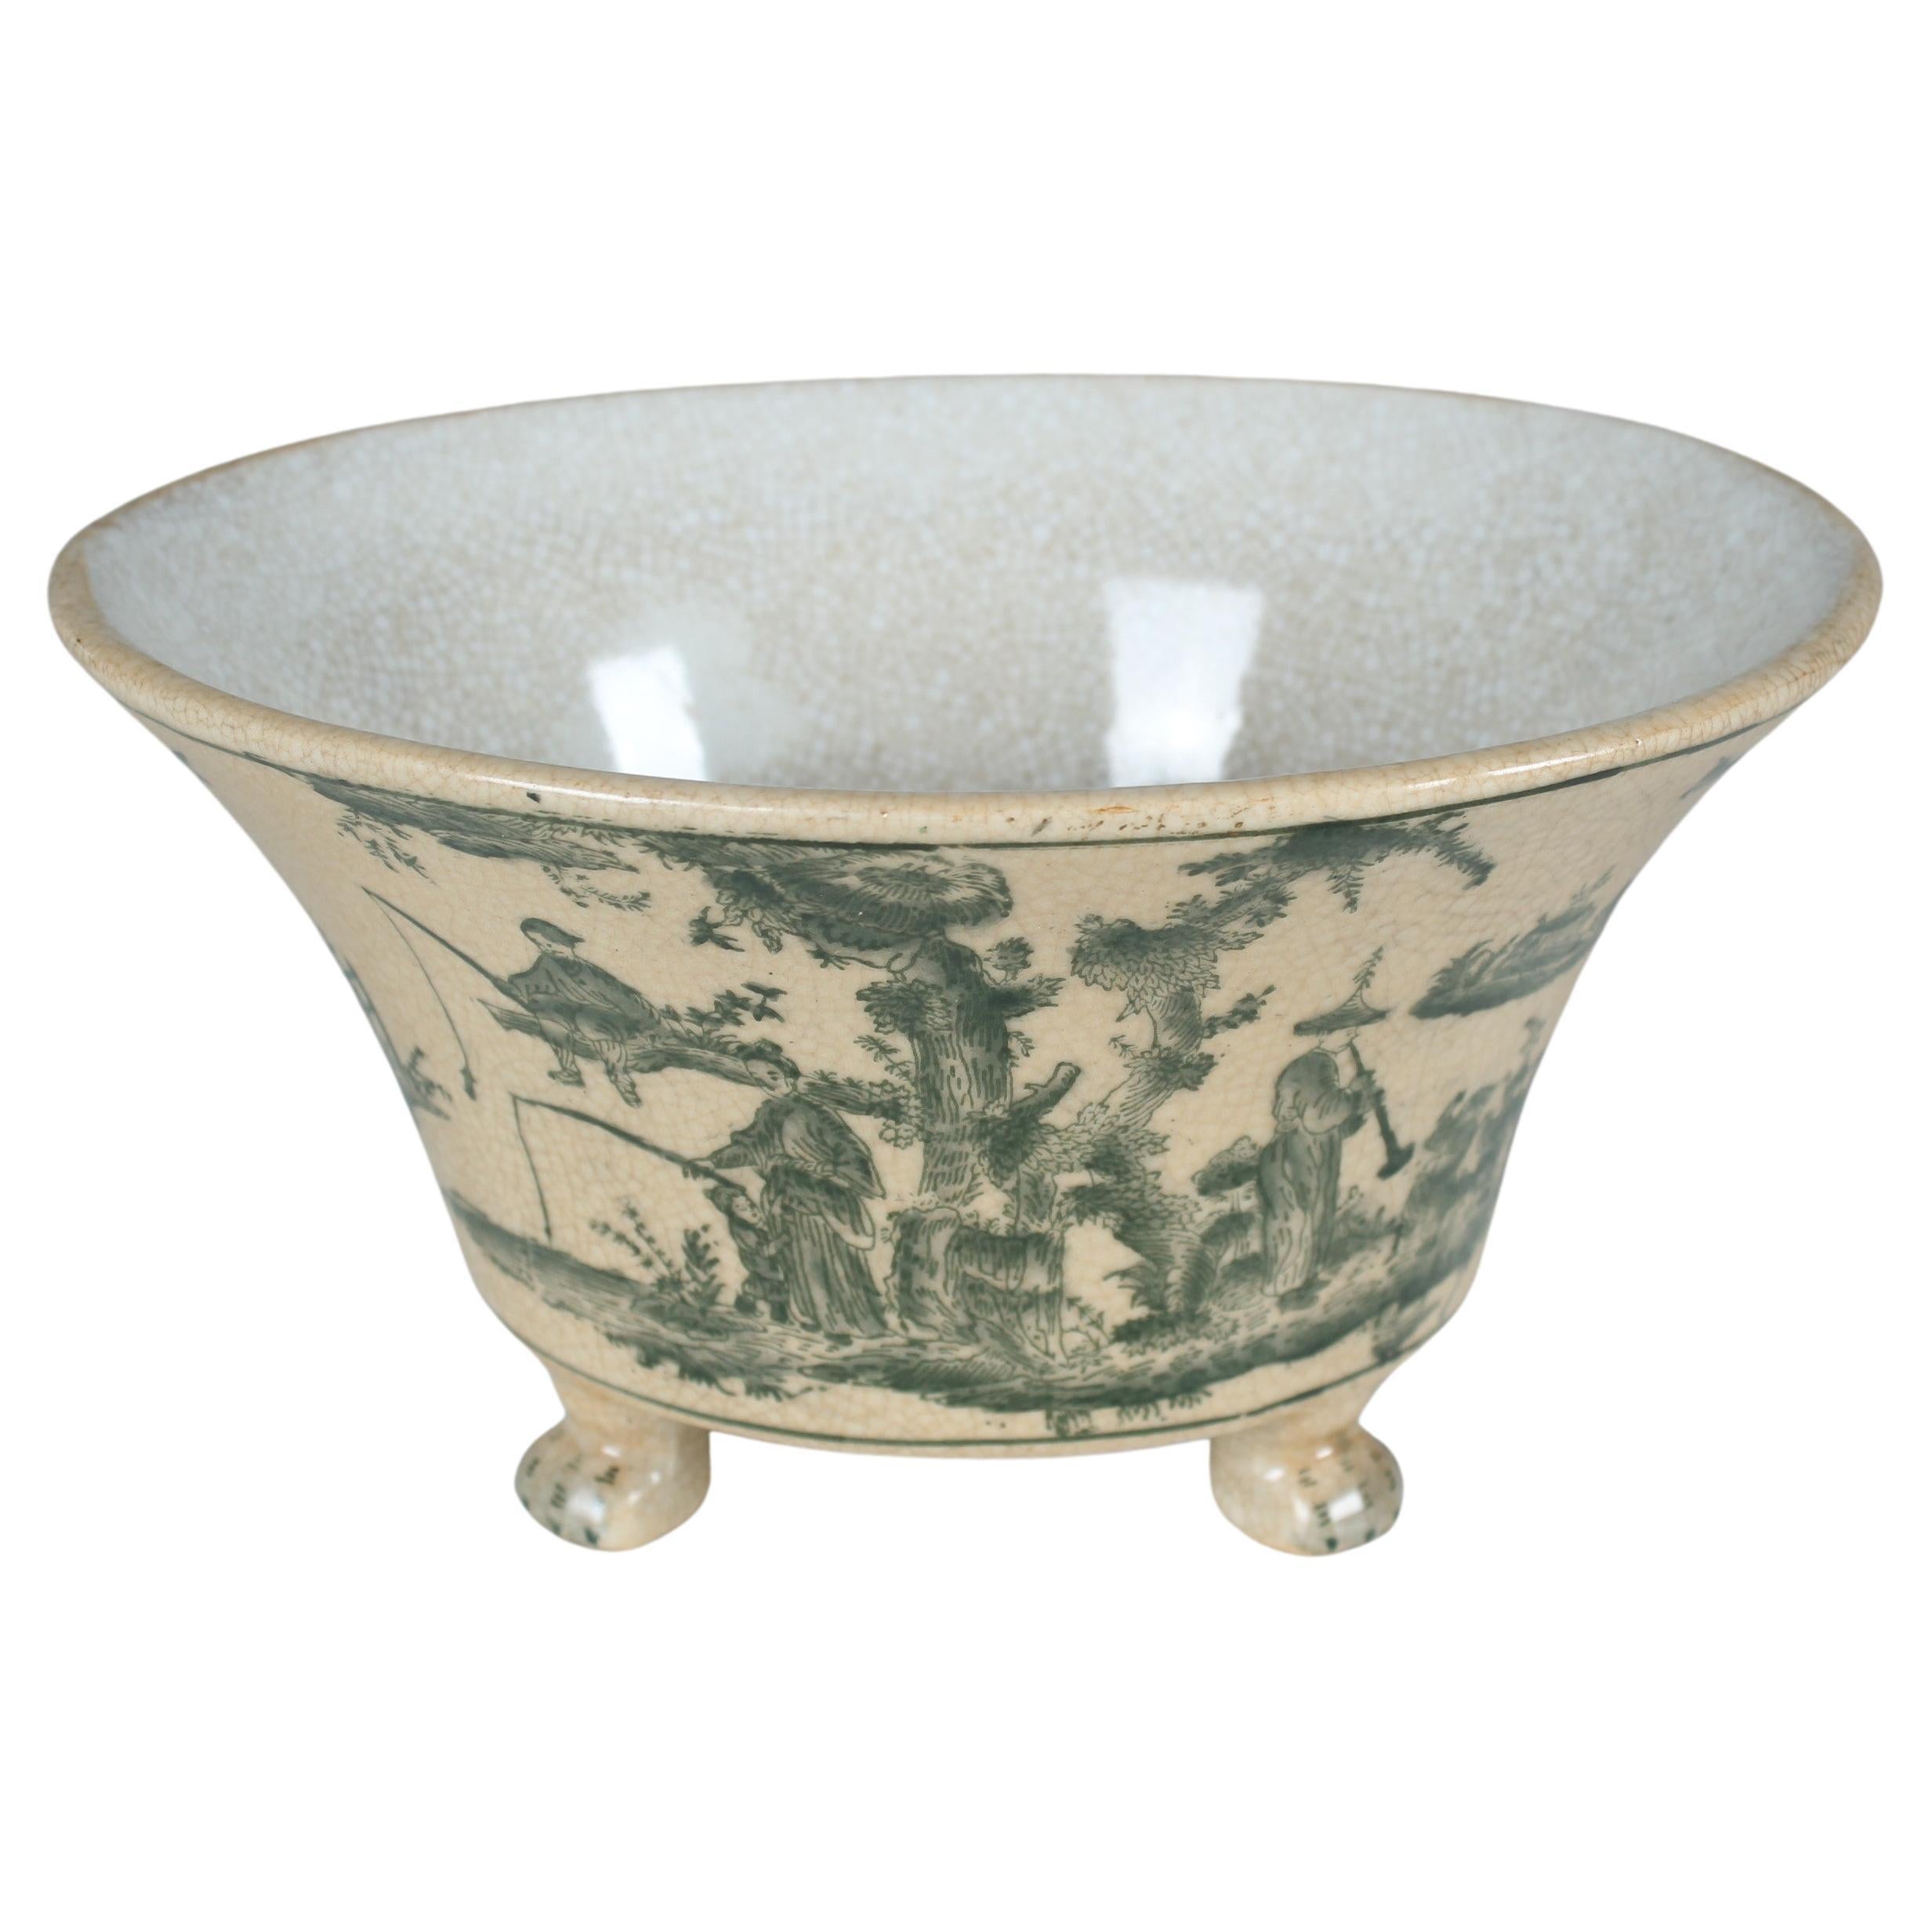 Antique Porcelain Jardinière, Bowl, G&C Interiors Denmark, circa 1900, Asian Art For Sale